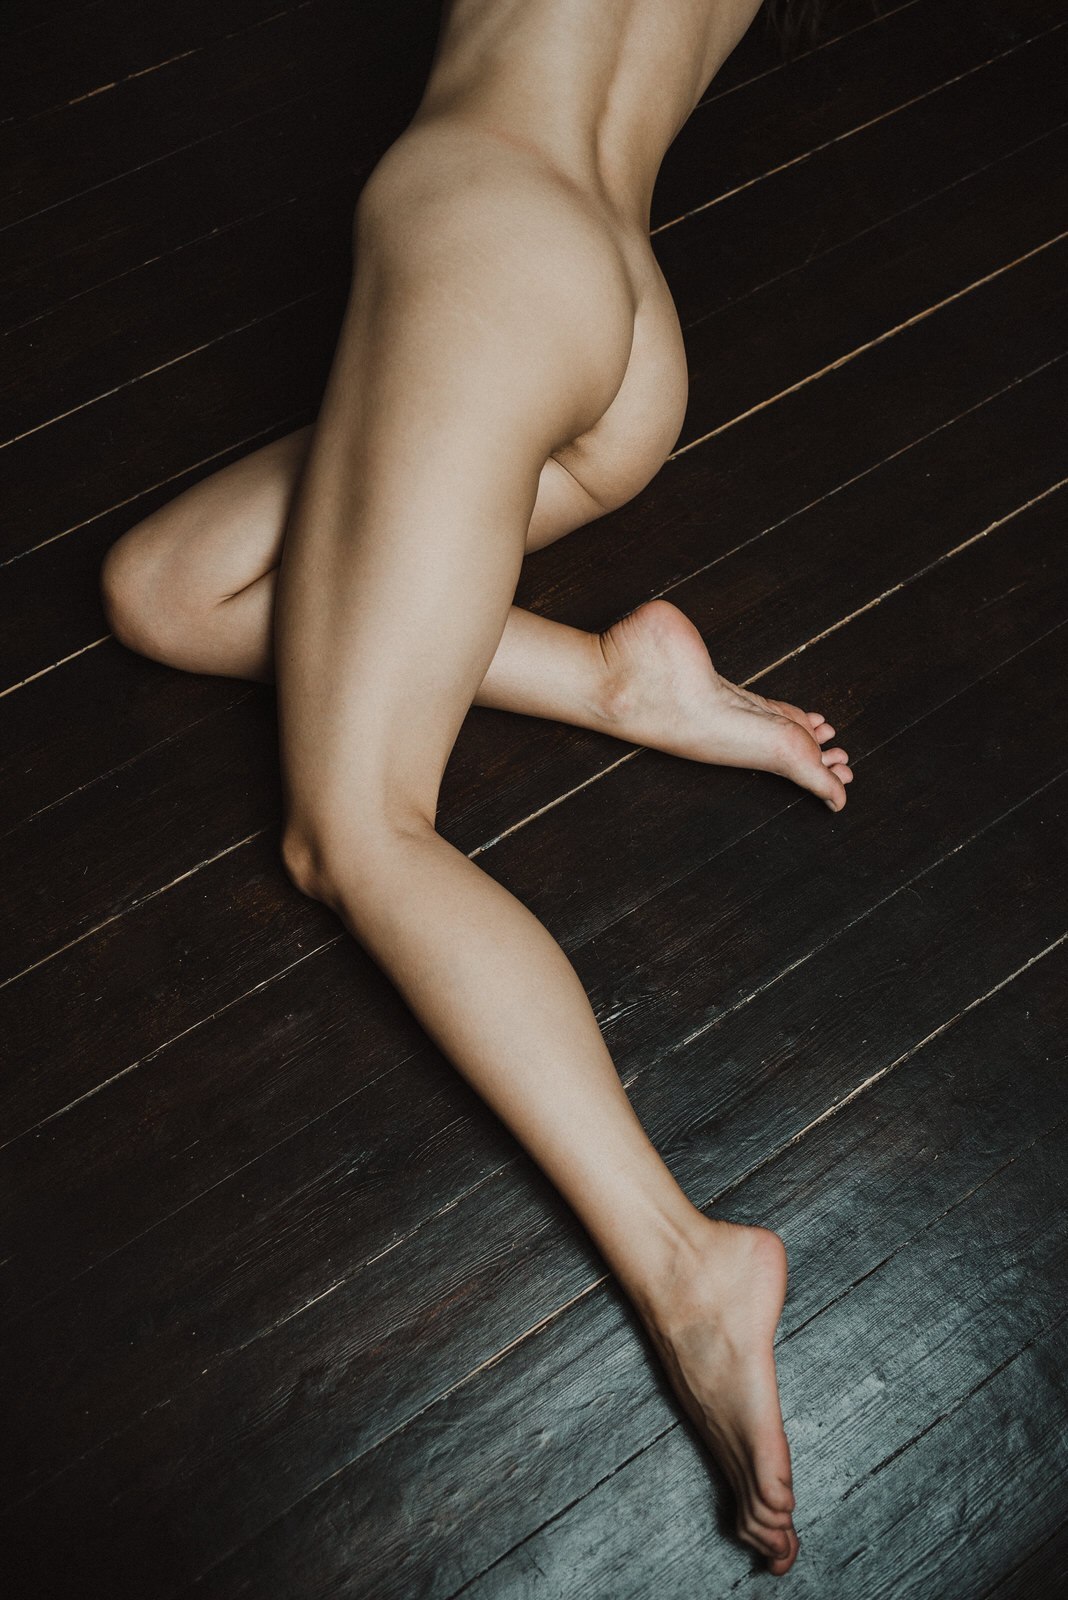 Νεαρό κορίτσι ποζάρει γυμνή για χάρη του Instagram